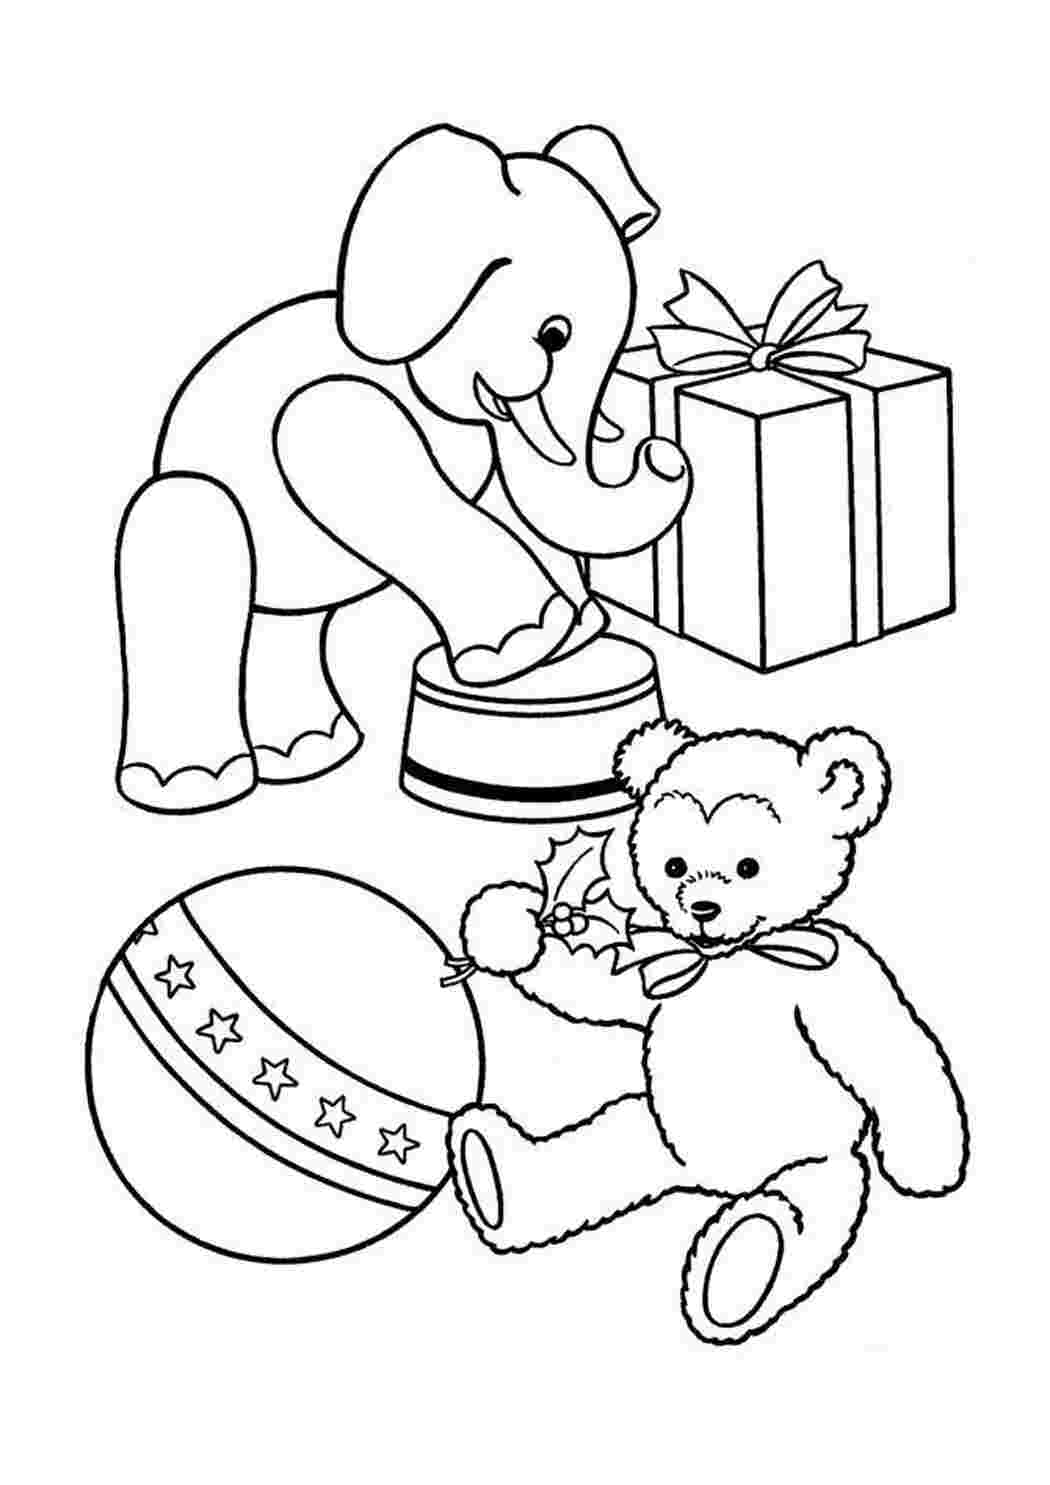 Раскраски Слон, медвежонок Слон, медвежонок Раскраска цветок для скачивания Раскраска для девочки